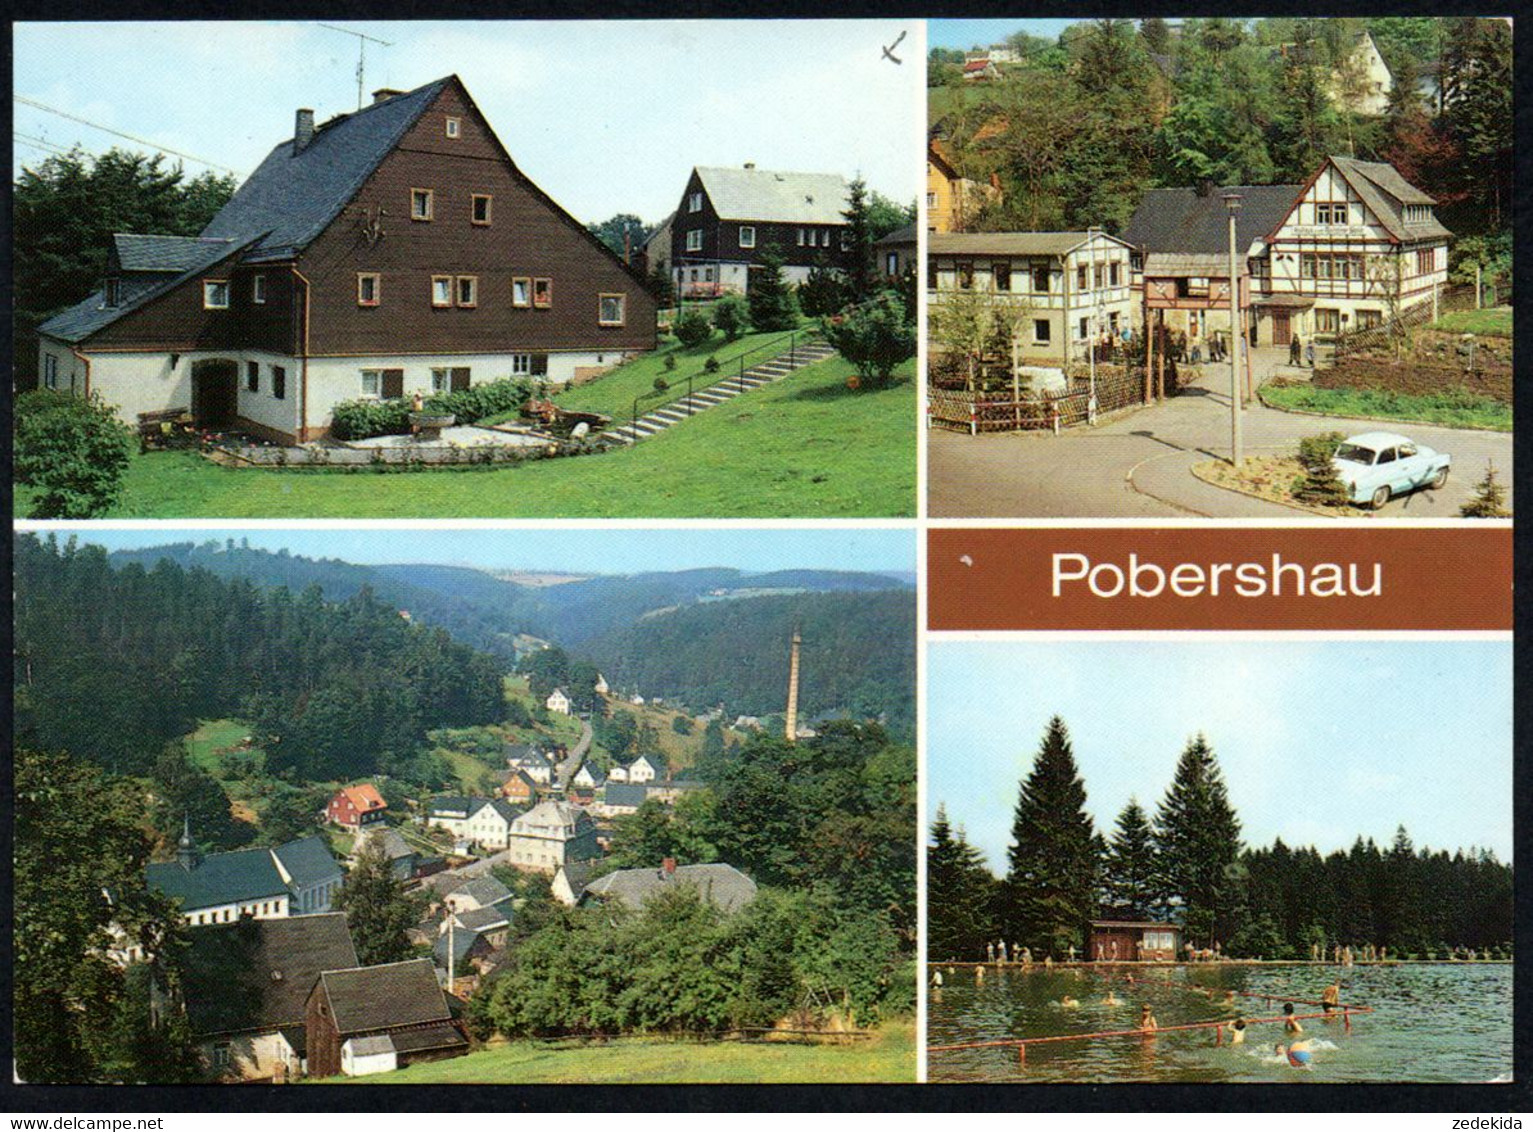 A9635 - TOP Pobershau Ferienheim VEB Feuerungsbau Holzhausen Freibad - Bild Und Heimat Reichenbach - Marienberg